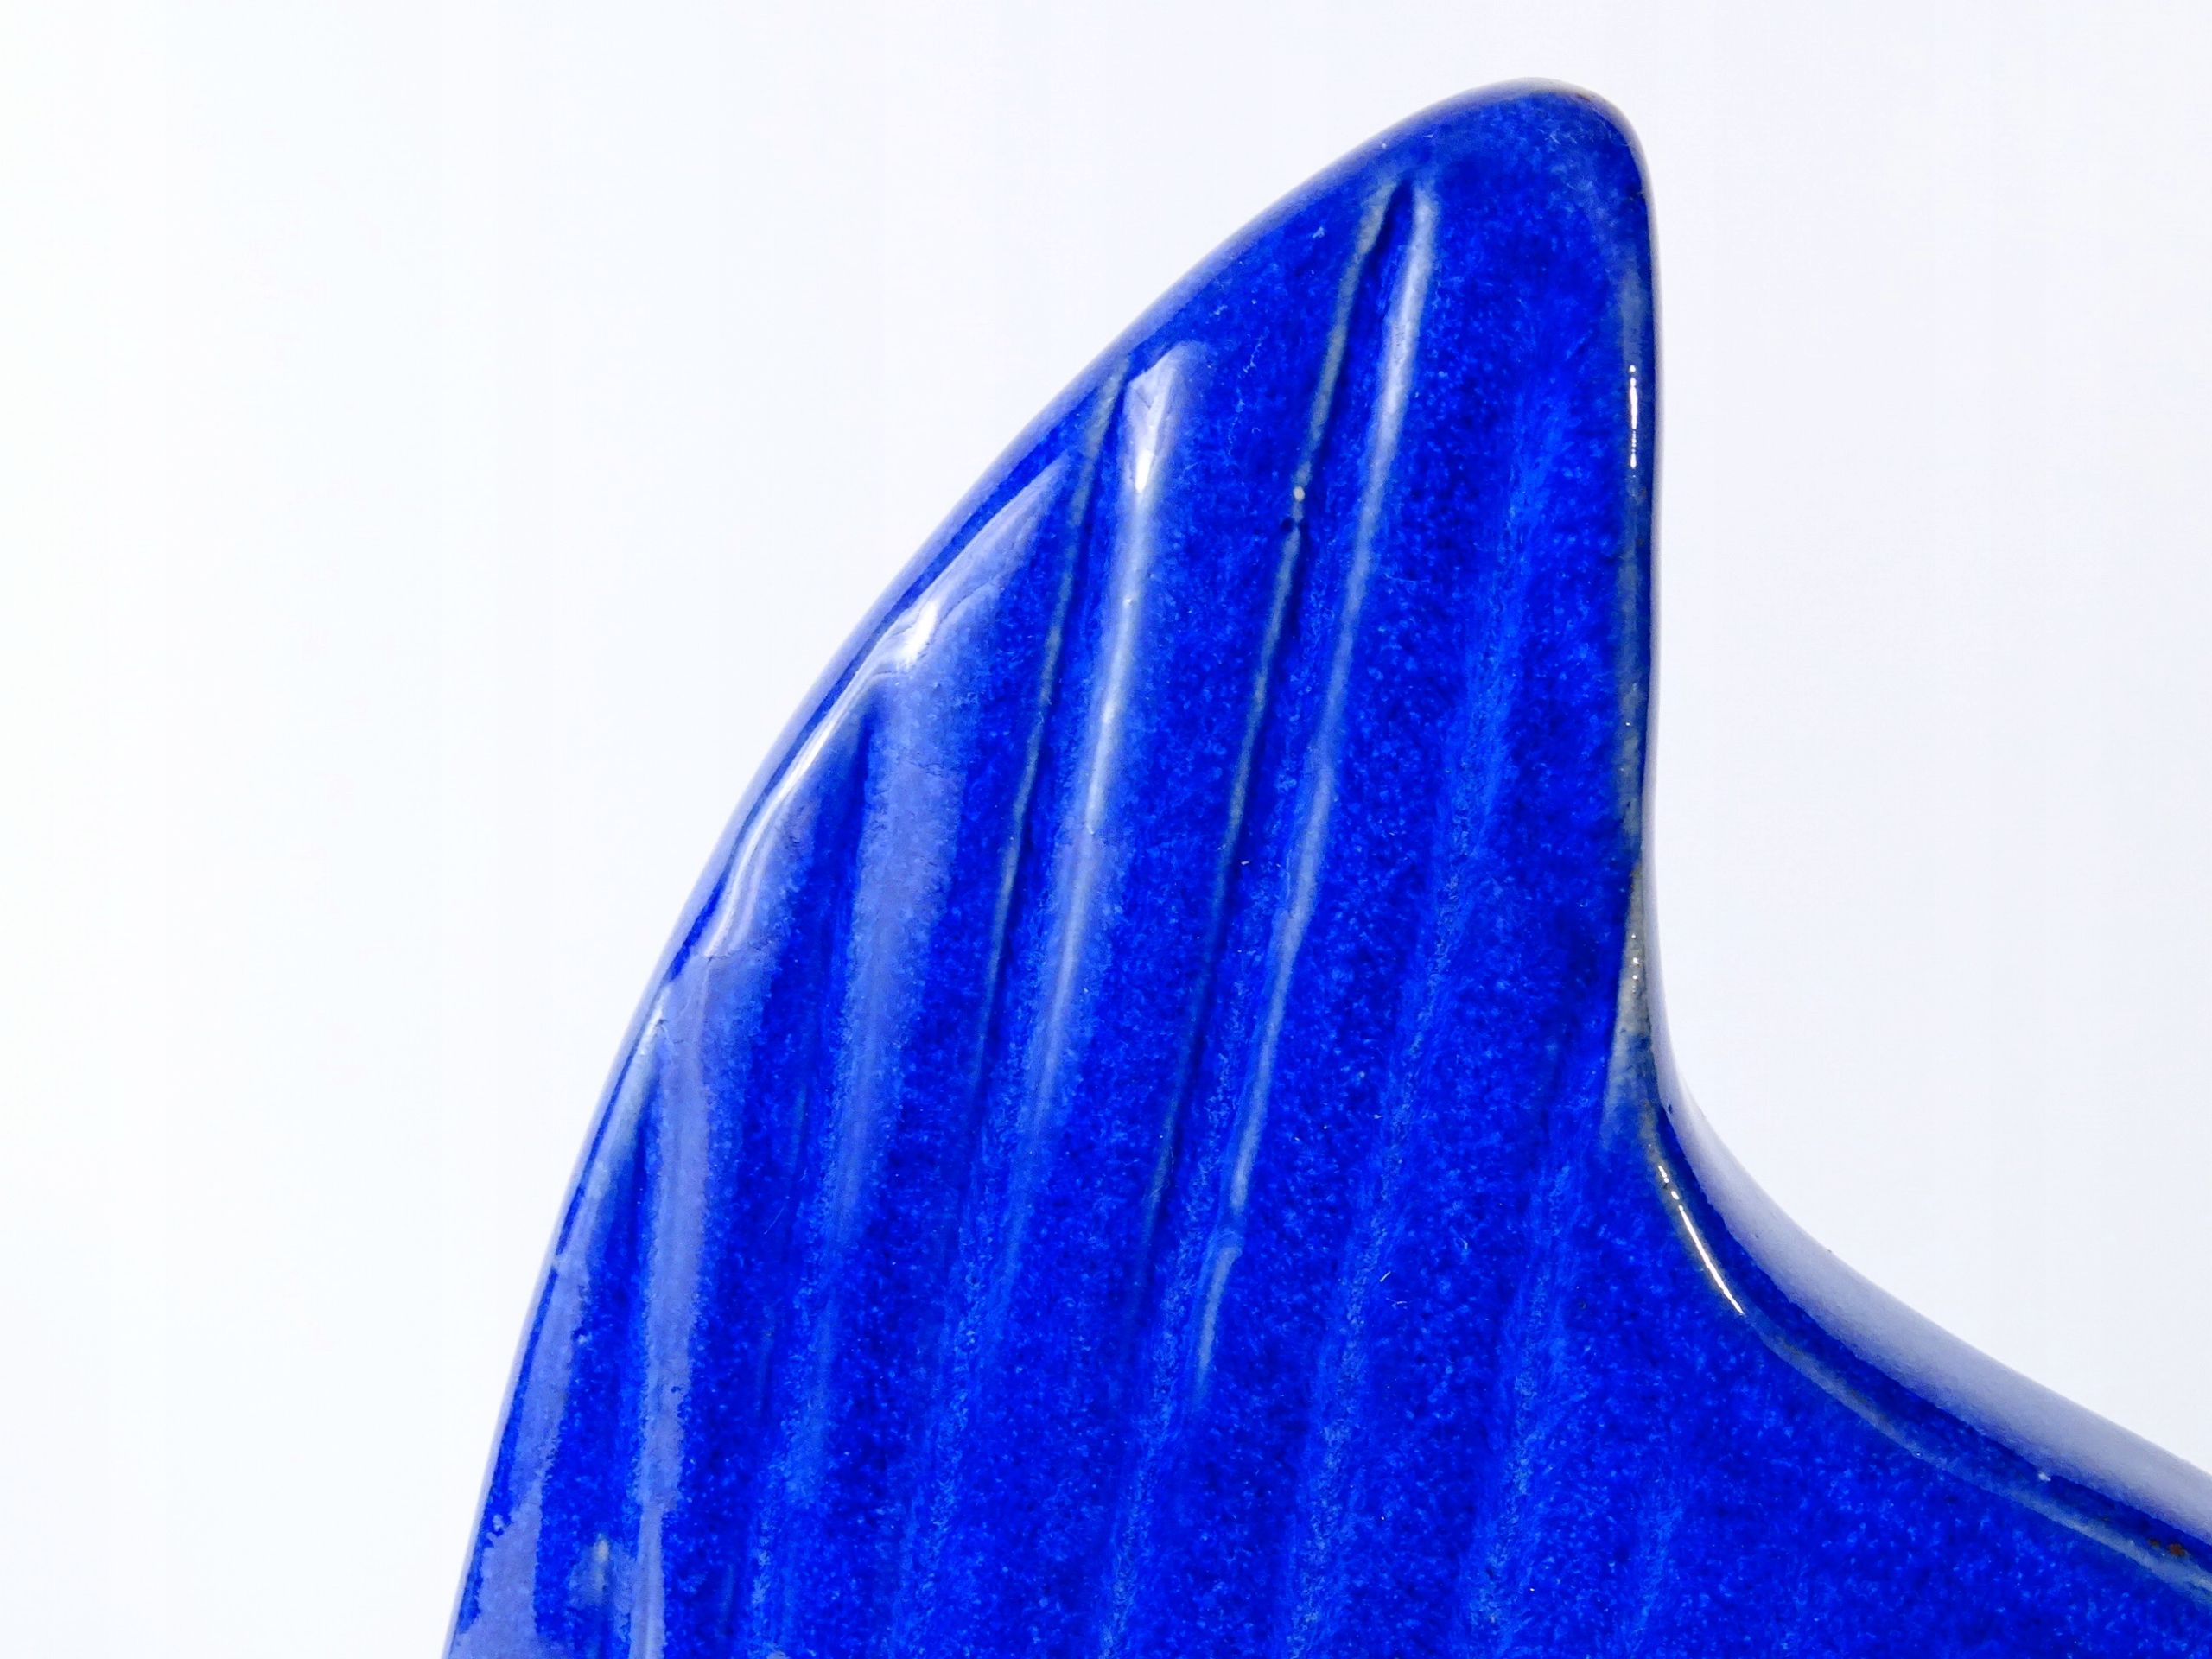 duża stara figura ceramiczna niebieska ryba